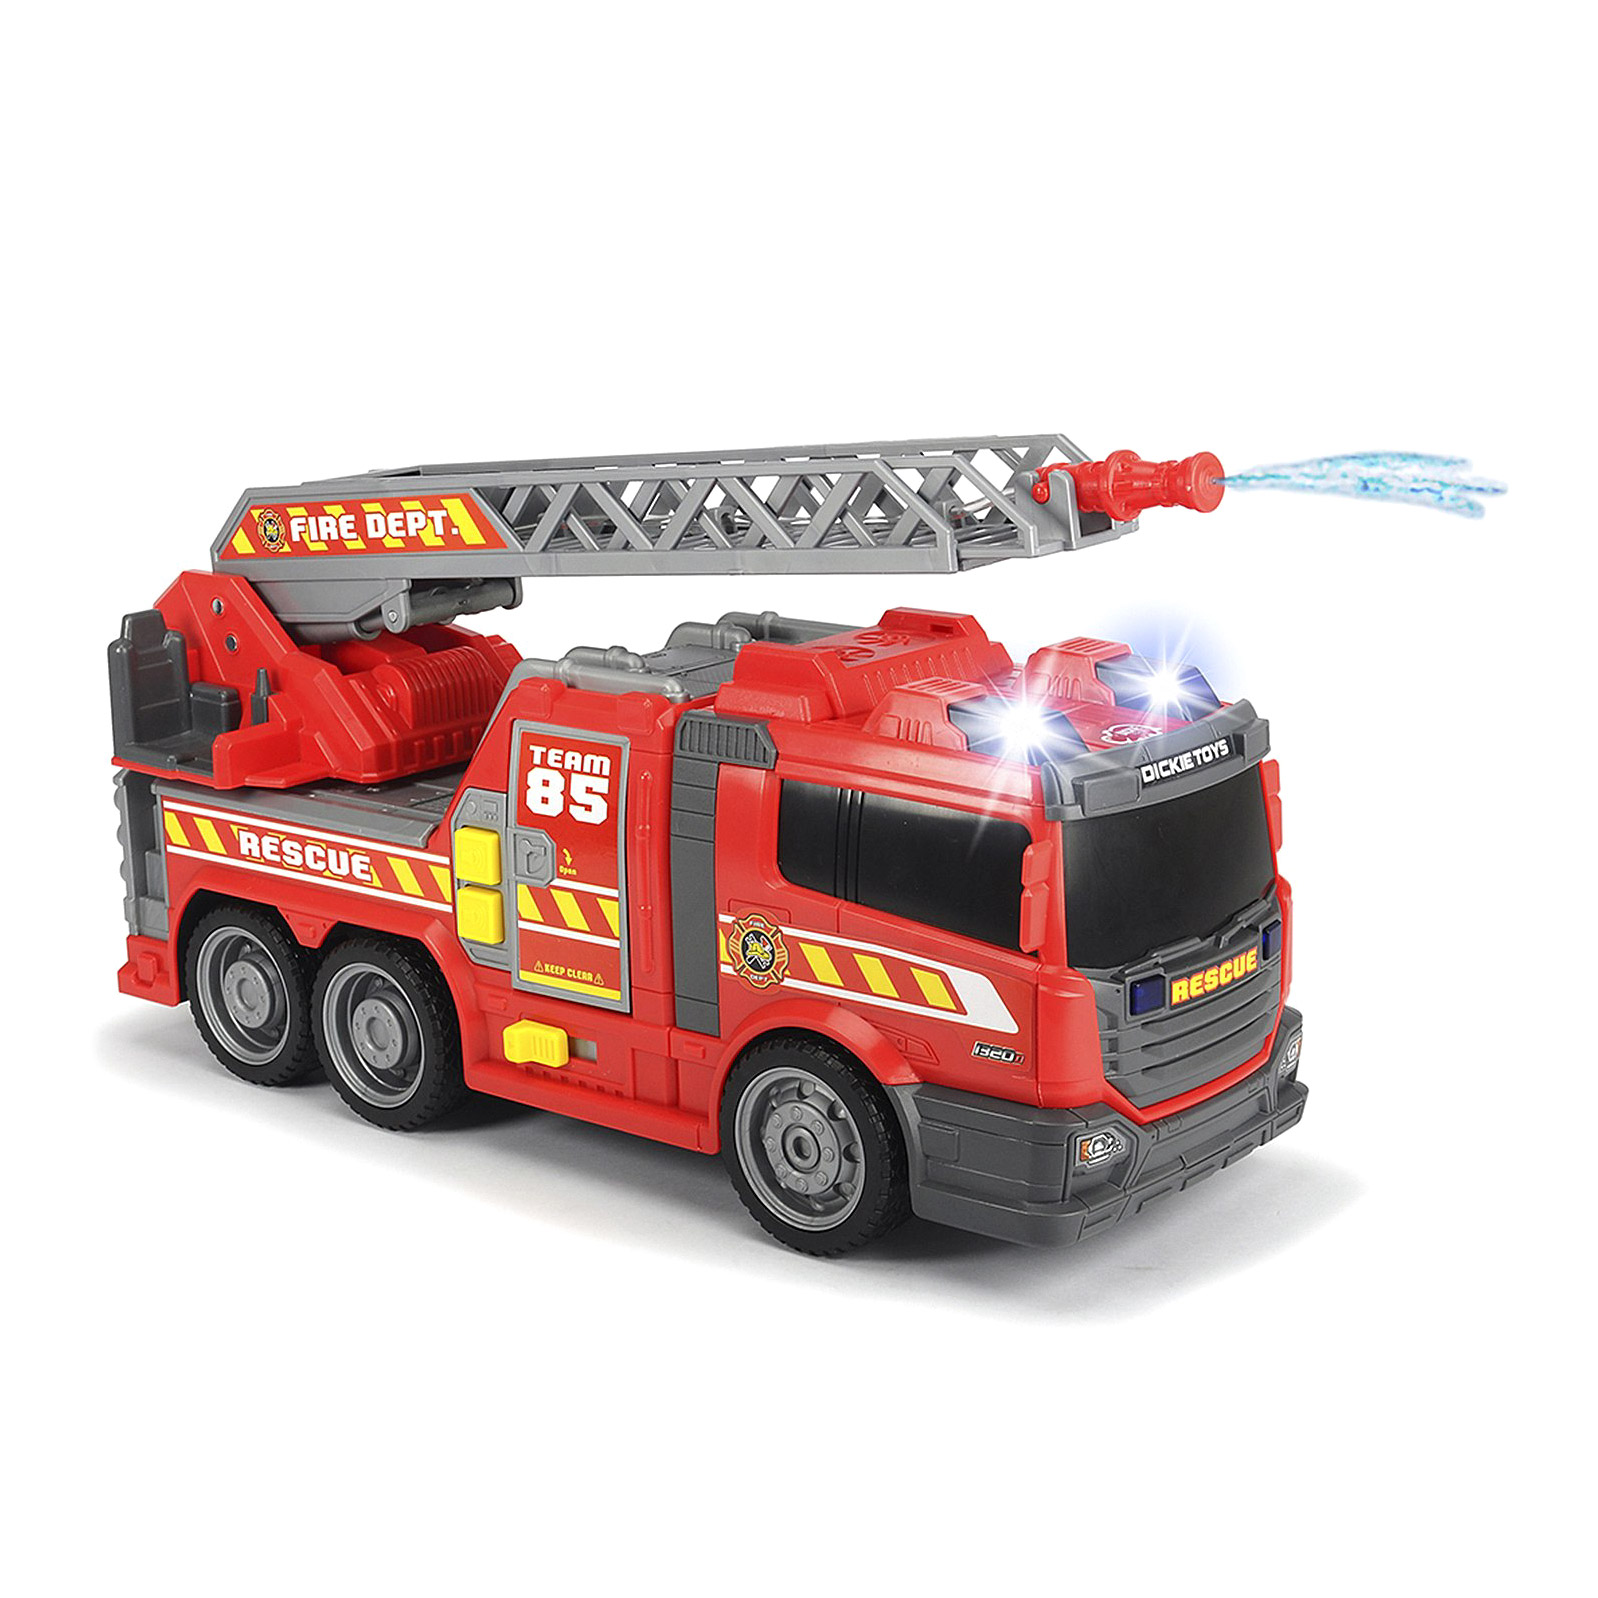 Купить игрушку пожарный. Dickie Toys пожарная машина с водой. Пожарный автомобиль Dickie Toys с фигурками (3826000) 34 см. Пожарный автомобиль Dickie Toys 3306005 30 см. Пожарная машина Dickie, 37 см.